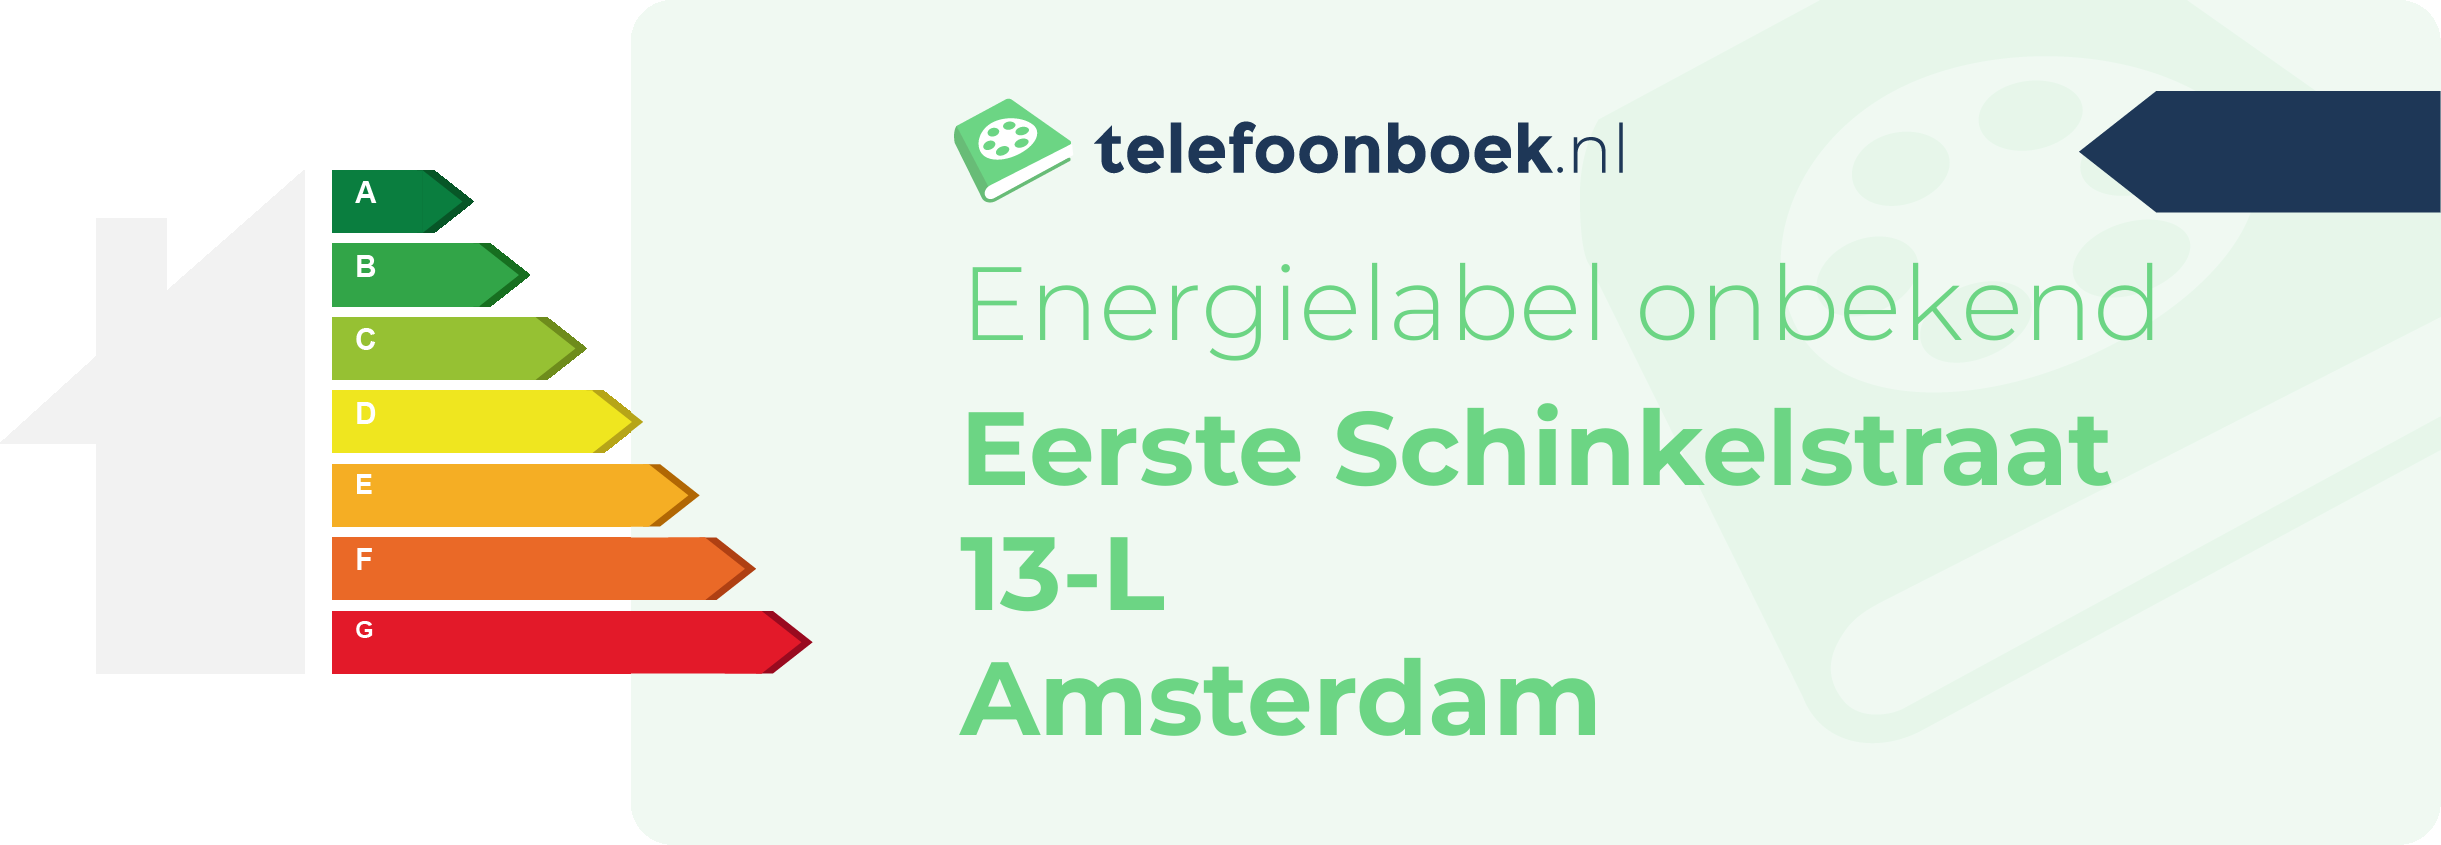 Energielabel Eerste Schinkelstraat 13-L Amsterdam